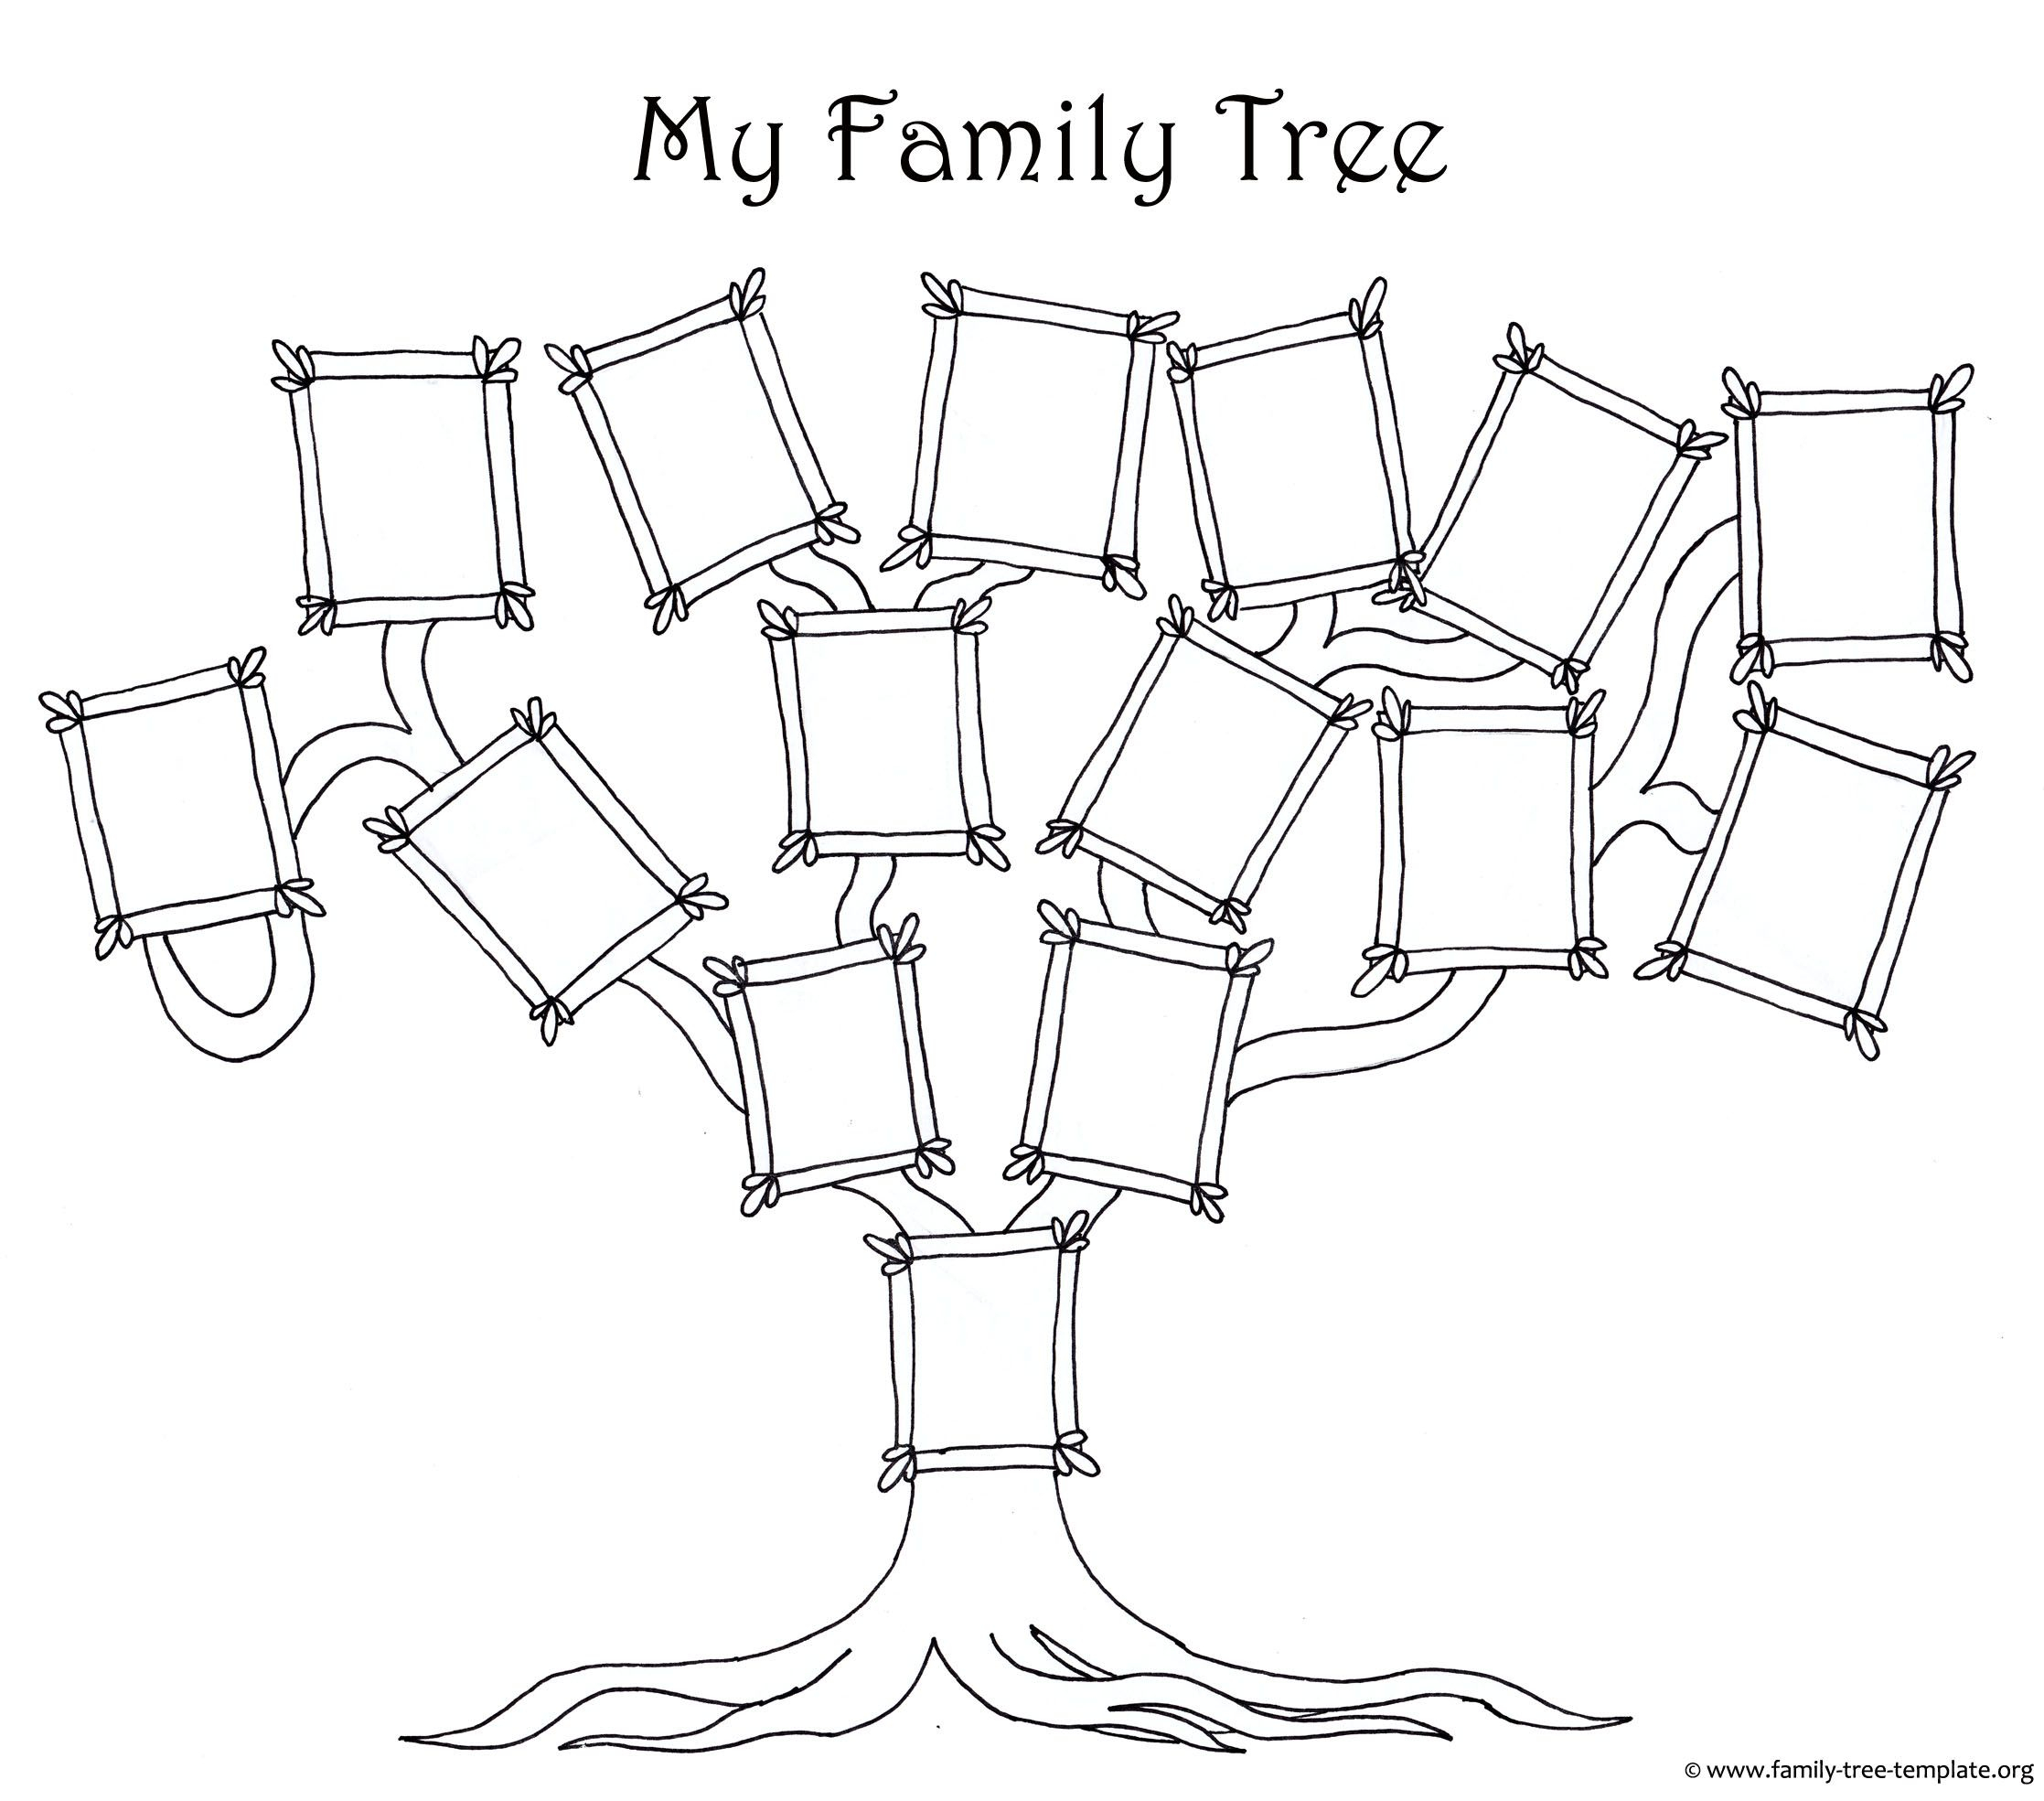 Family Tree Template Blank Family Tree Template Family Tree